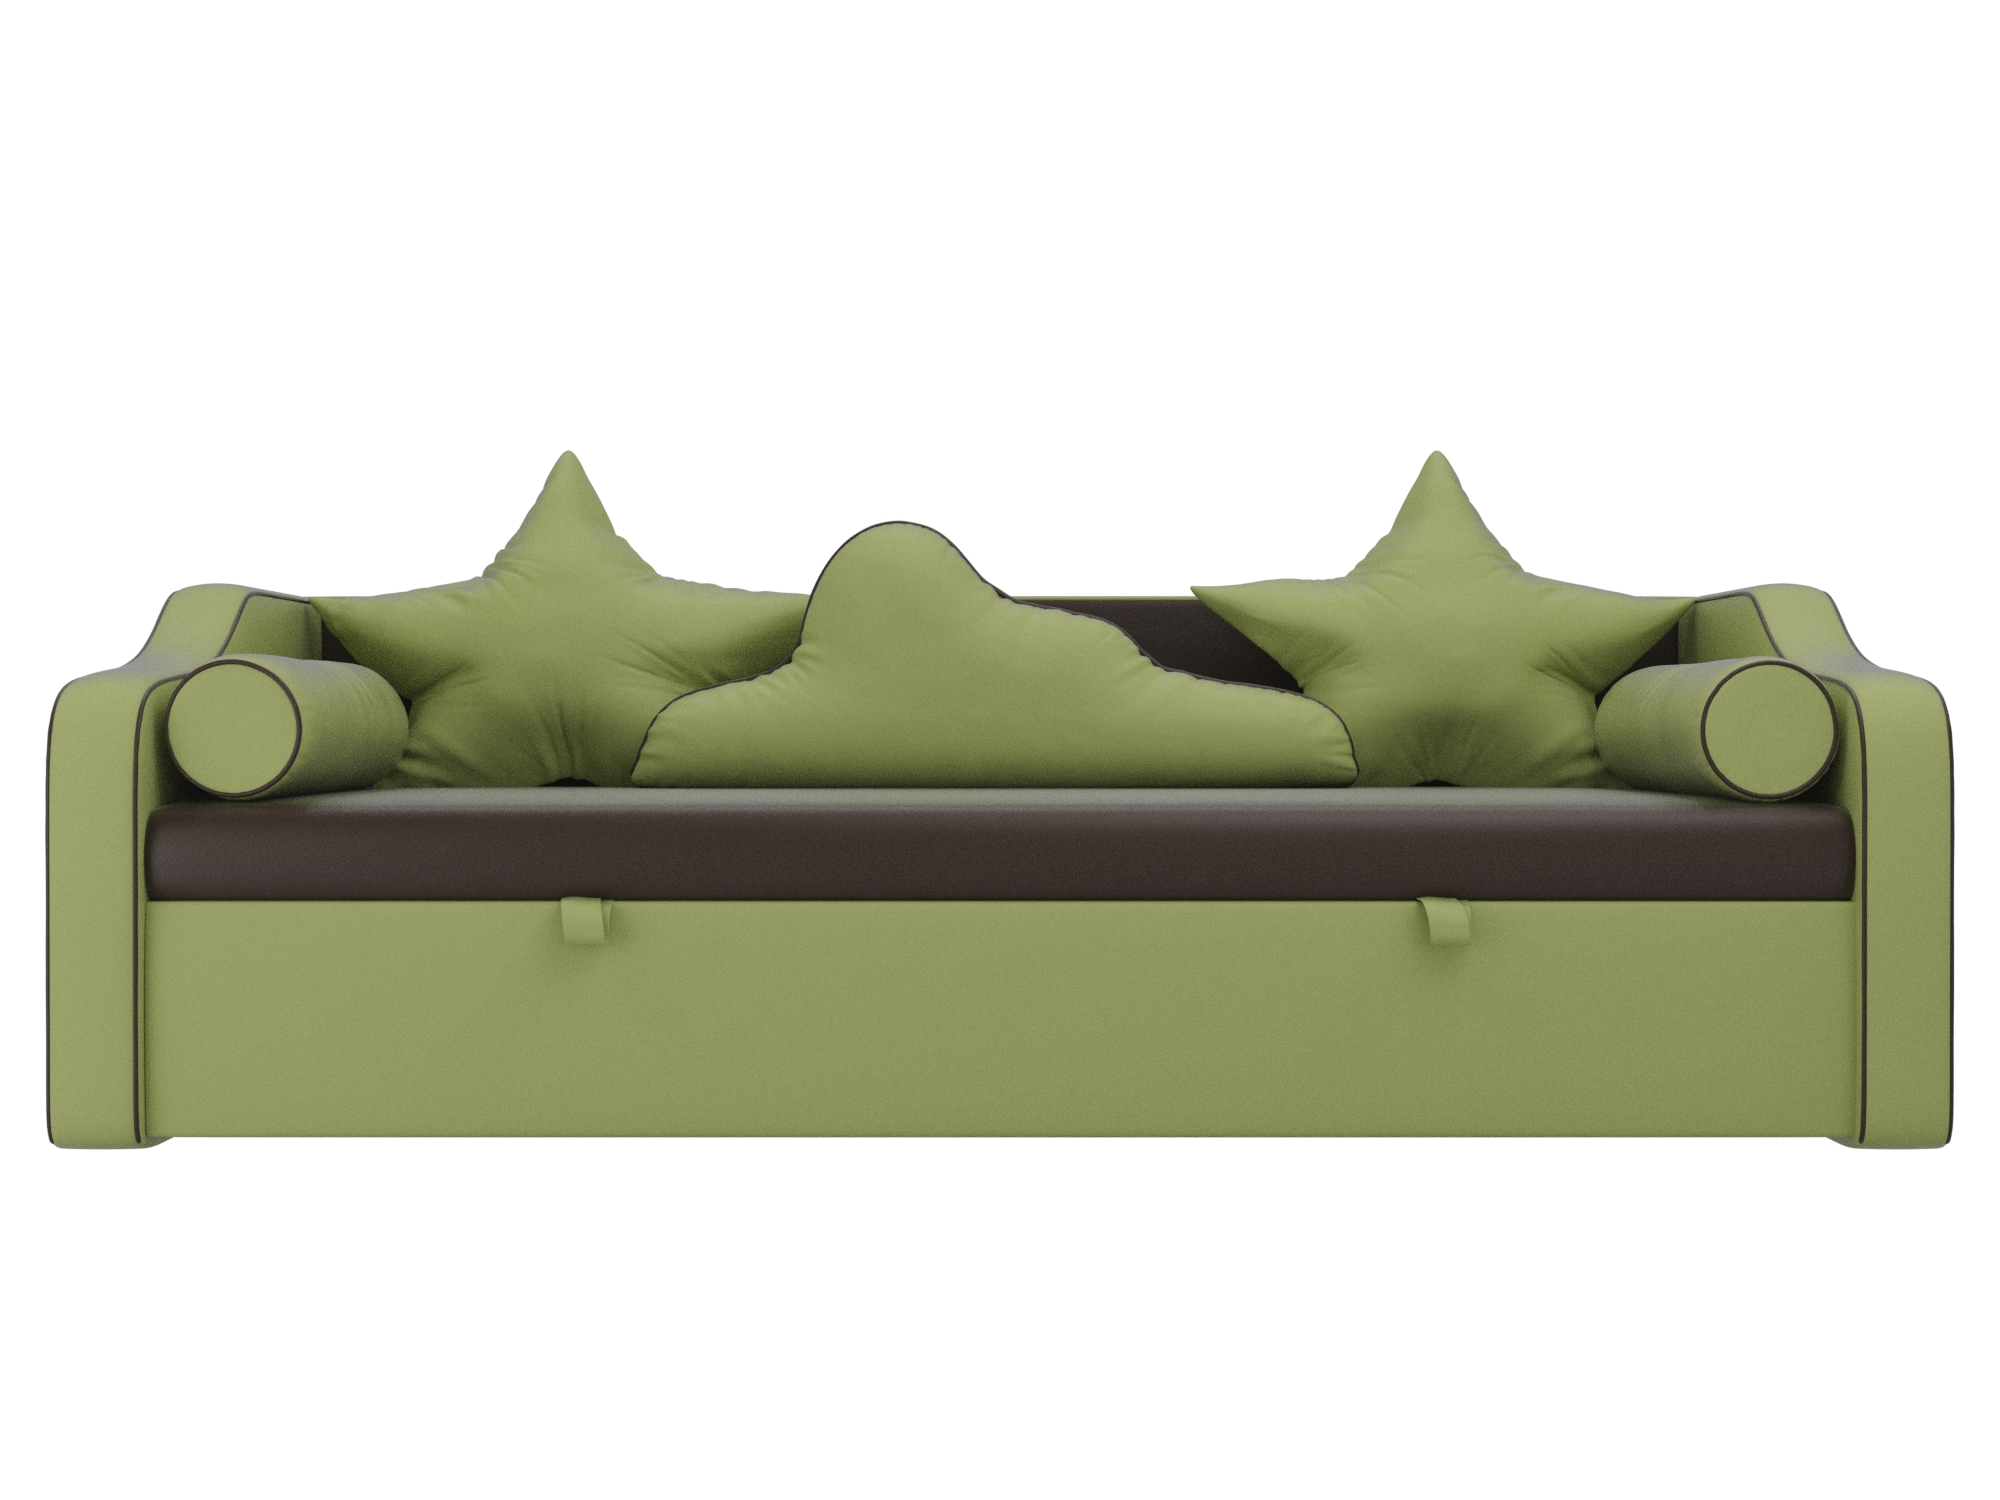 детский диван кровать рико mebelvia желтый оранжевый экокожа лдсп Детский диван-кровать Рико MebelVia Коричневый, Зеленый, Экокожа, ЛДСП